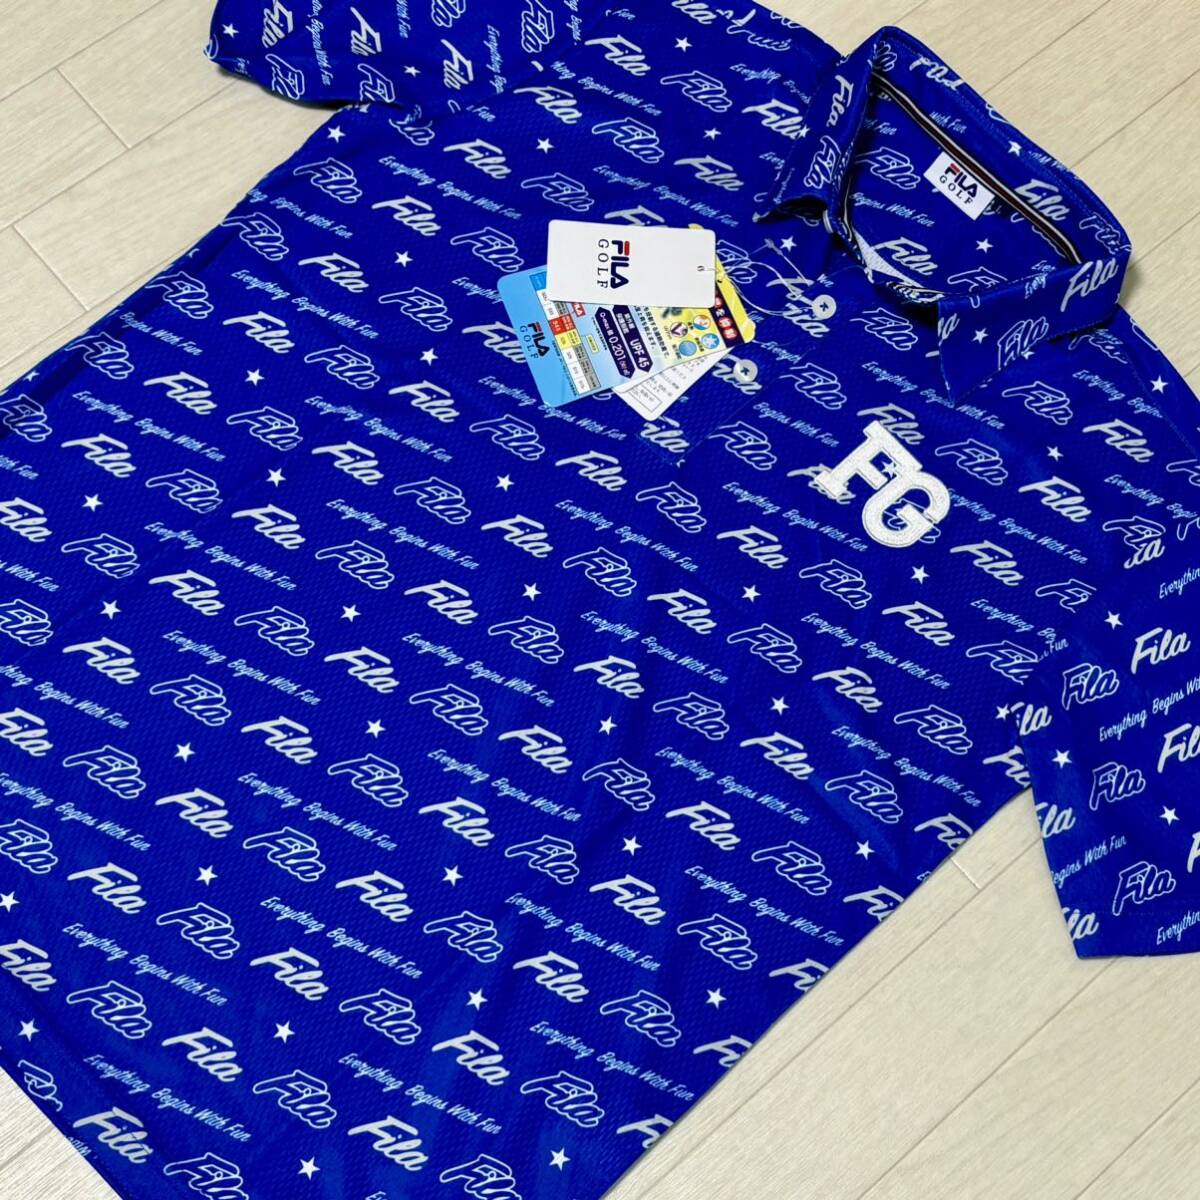  новый товар * filler Golf FILA GOLF POP Logo принт . пот скорость . контакт охлаждающий рубашка-поло с коротким рукавом * голубой * размер L* стоимость доставки 185 иен 